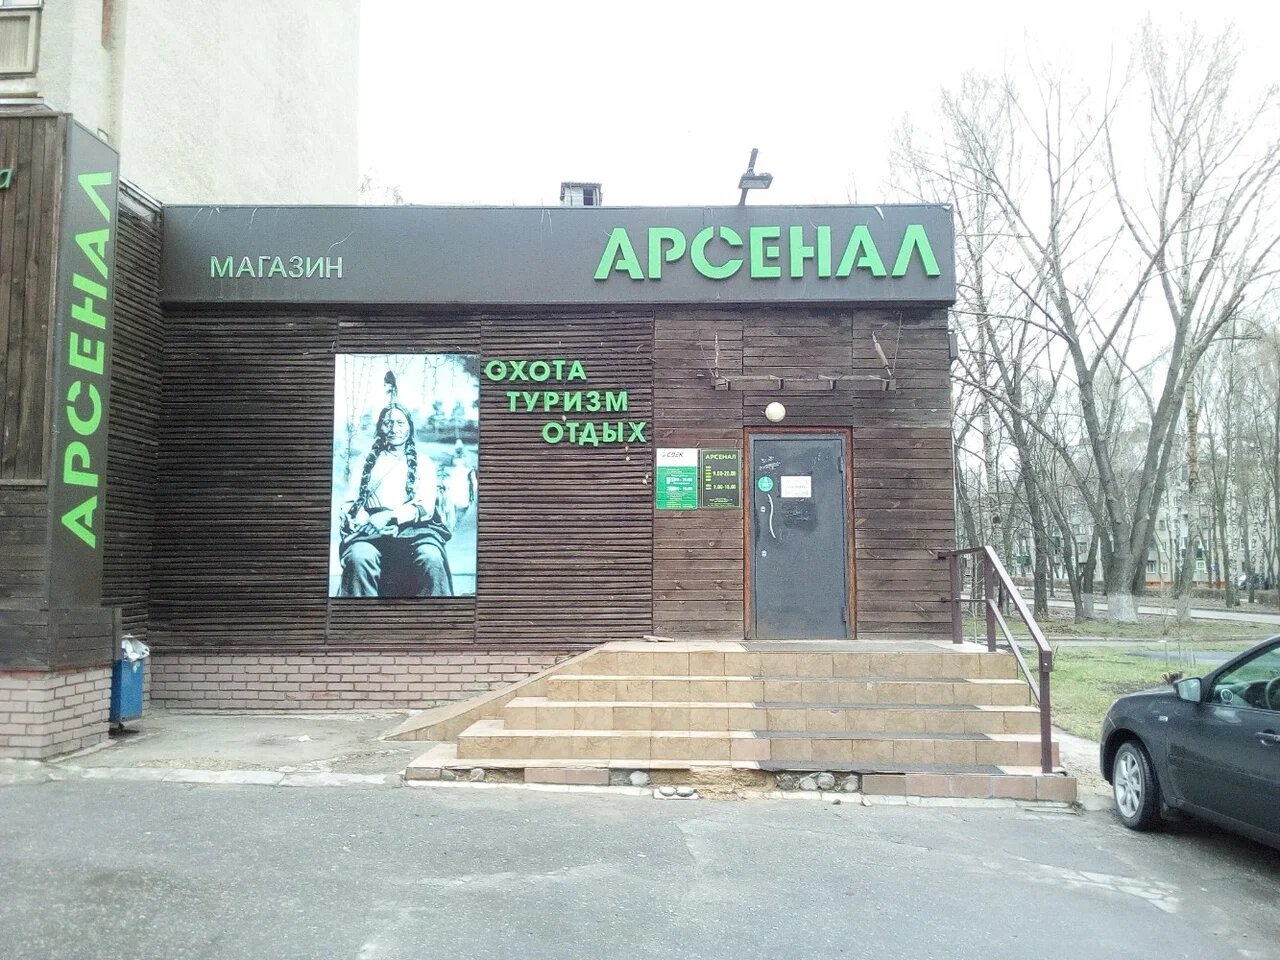 Магазин снаряжения "Арсенал" на проспекте Победы в Липецке